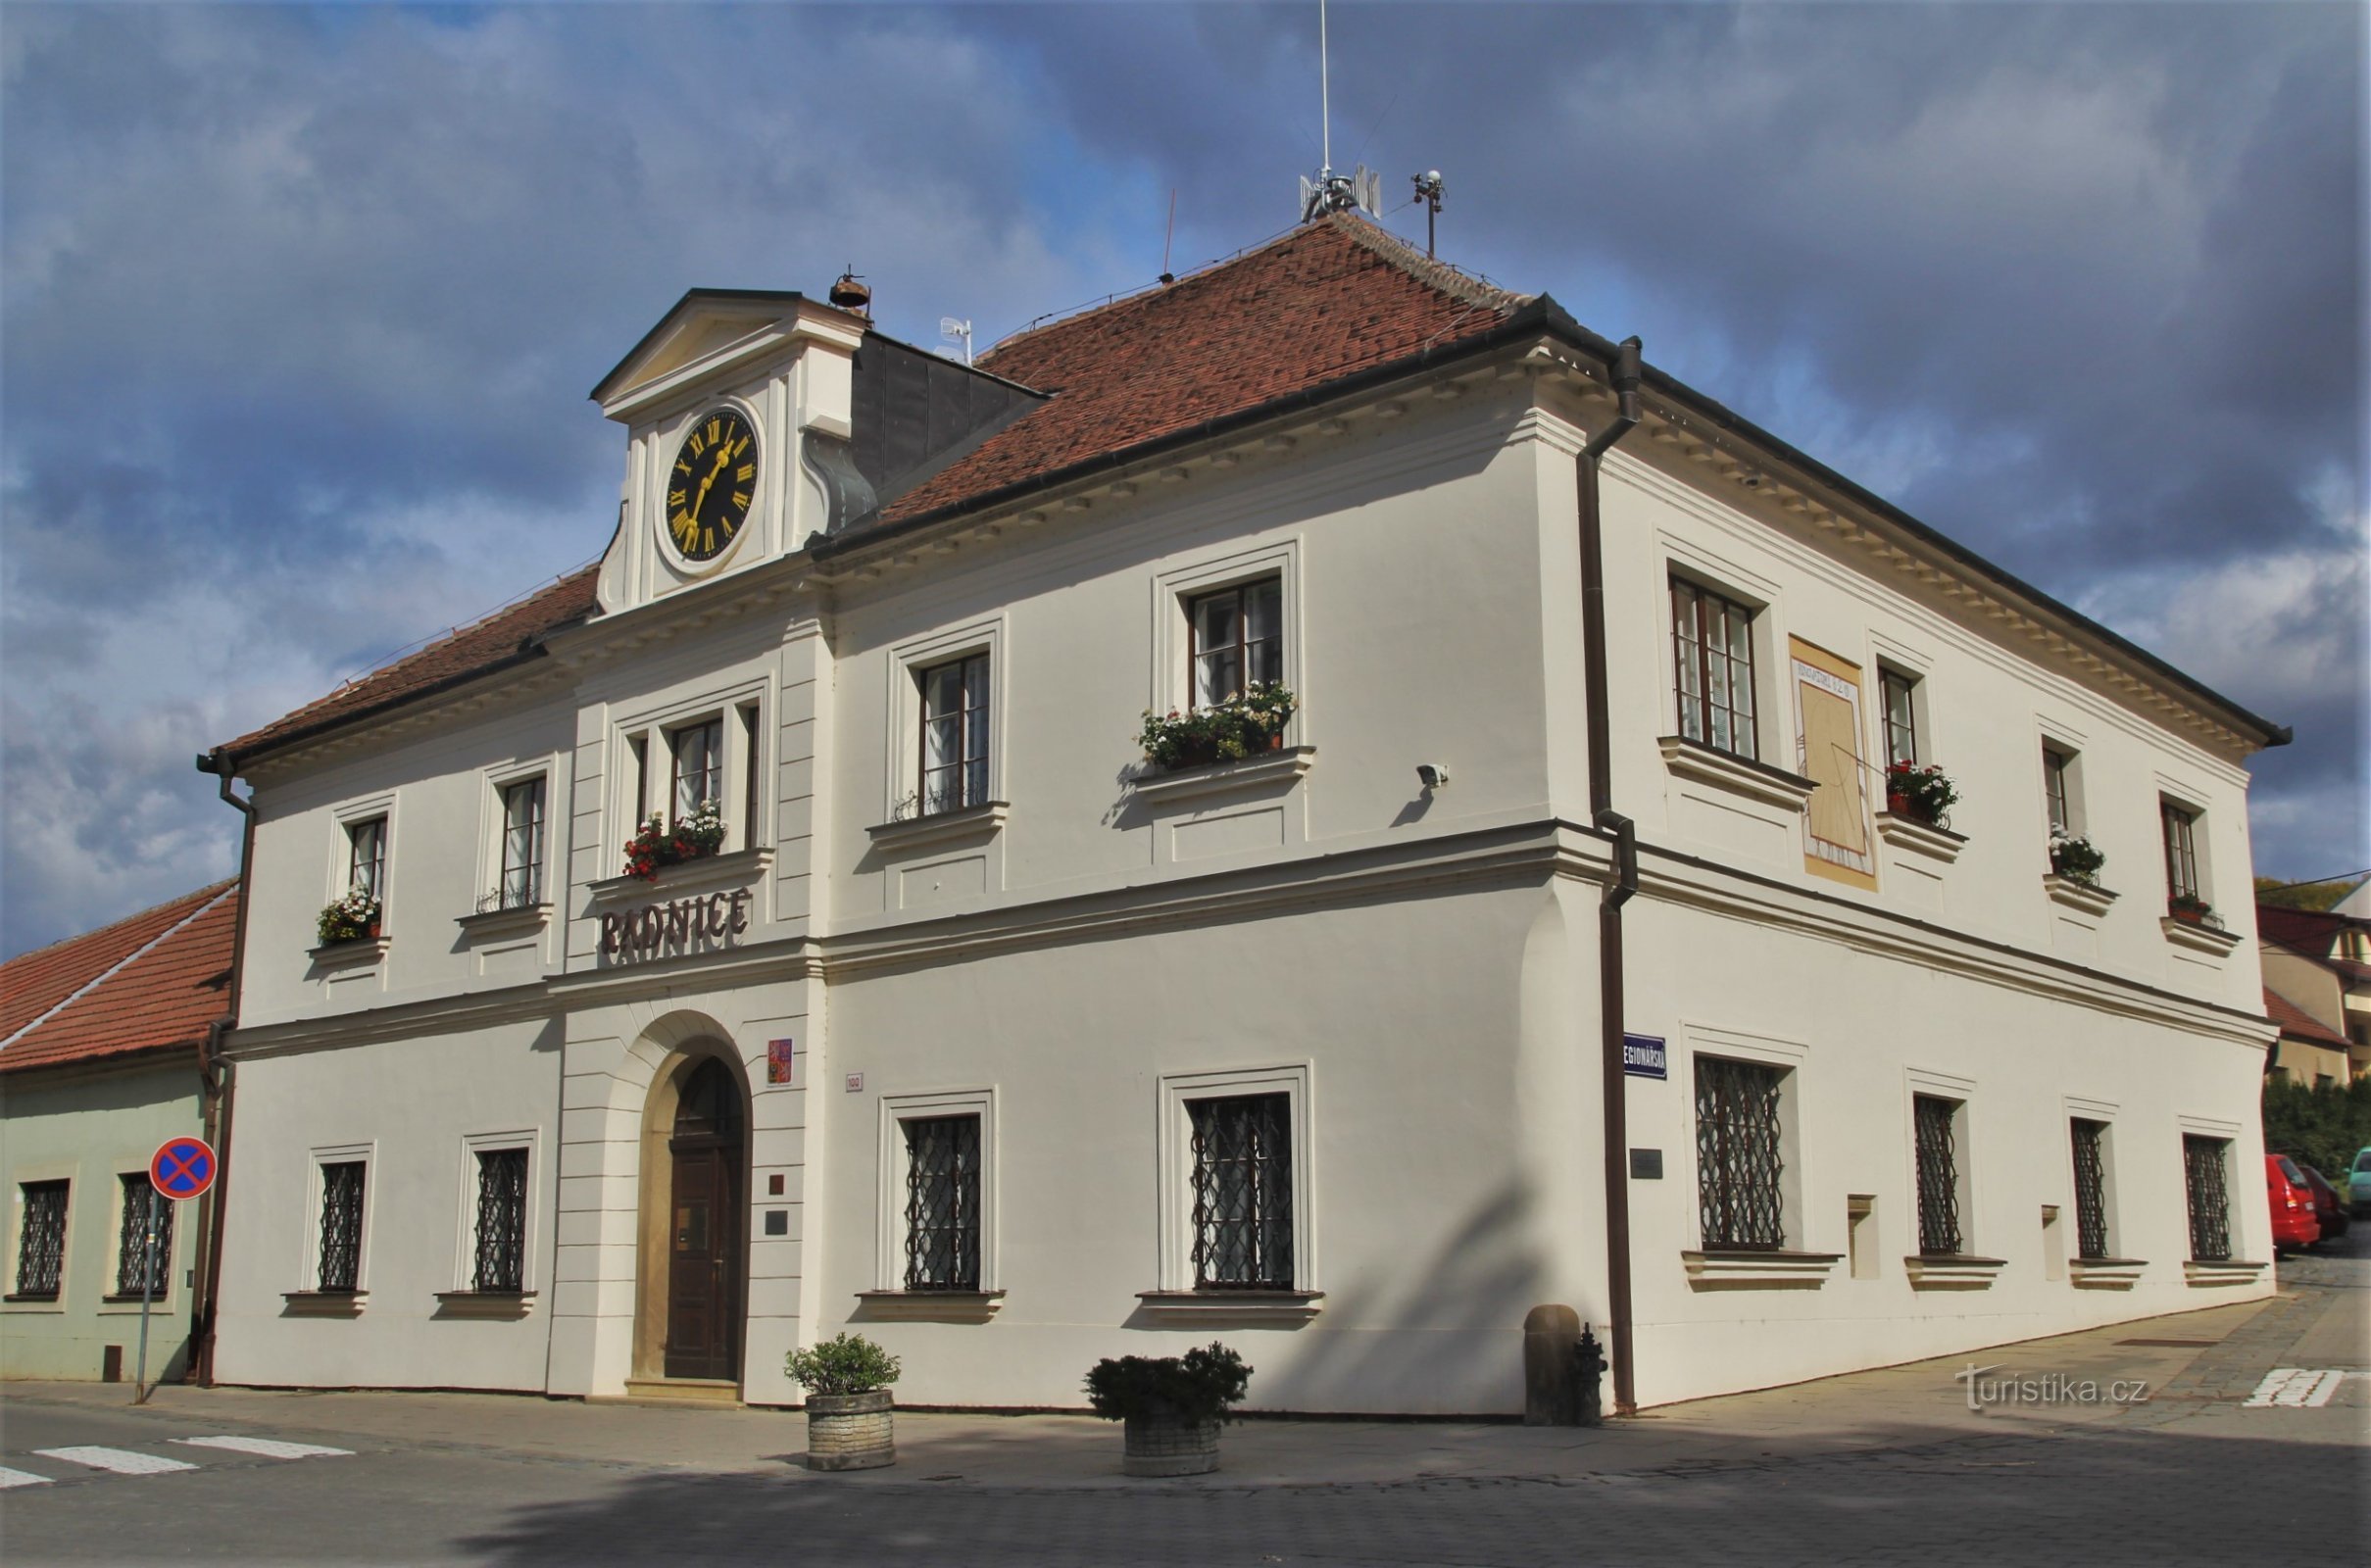 ジドロホヴィツァ市庁舎